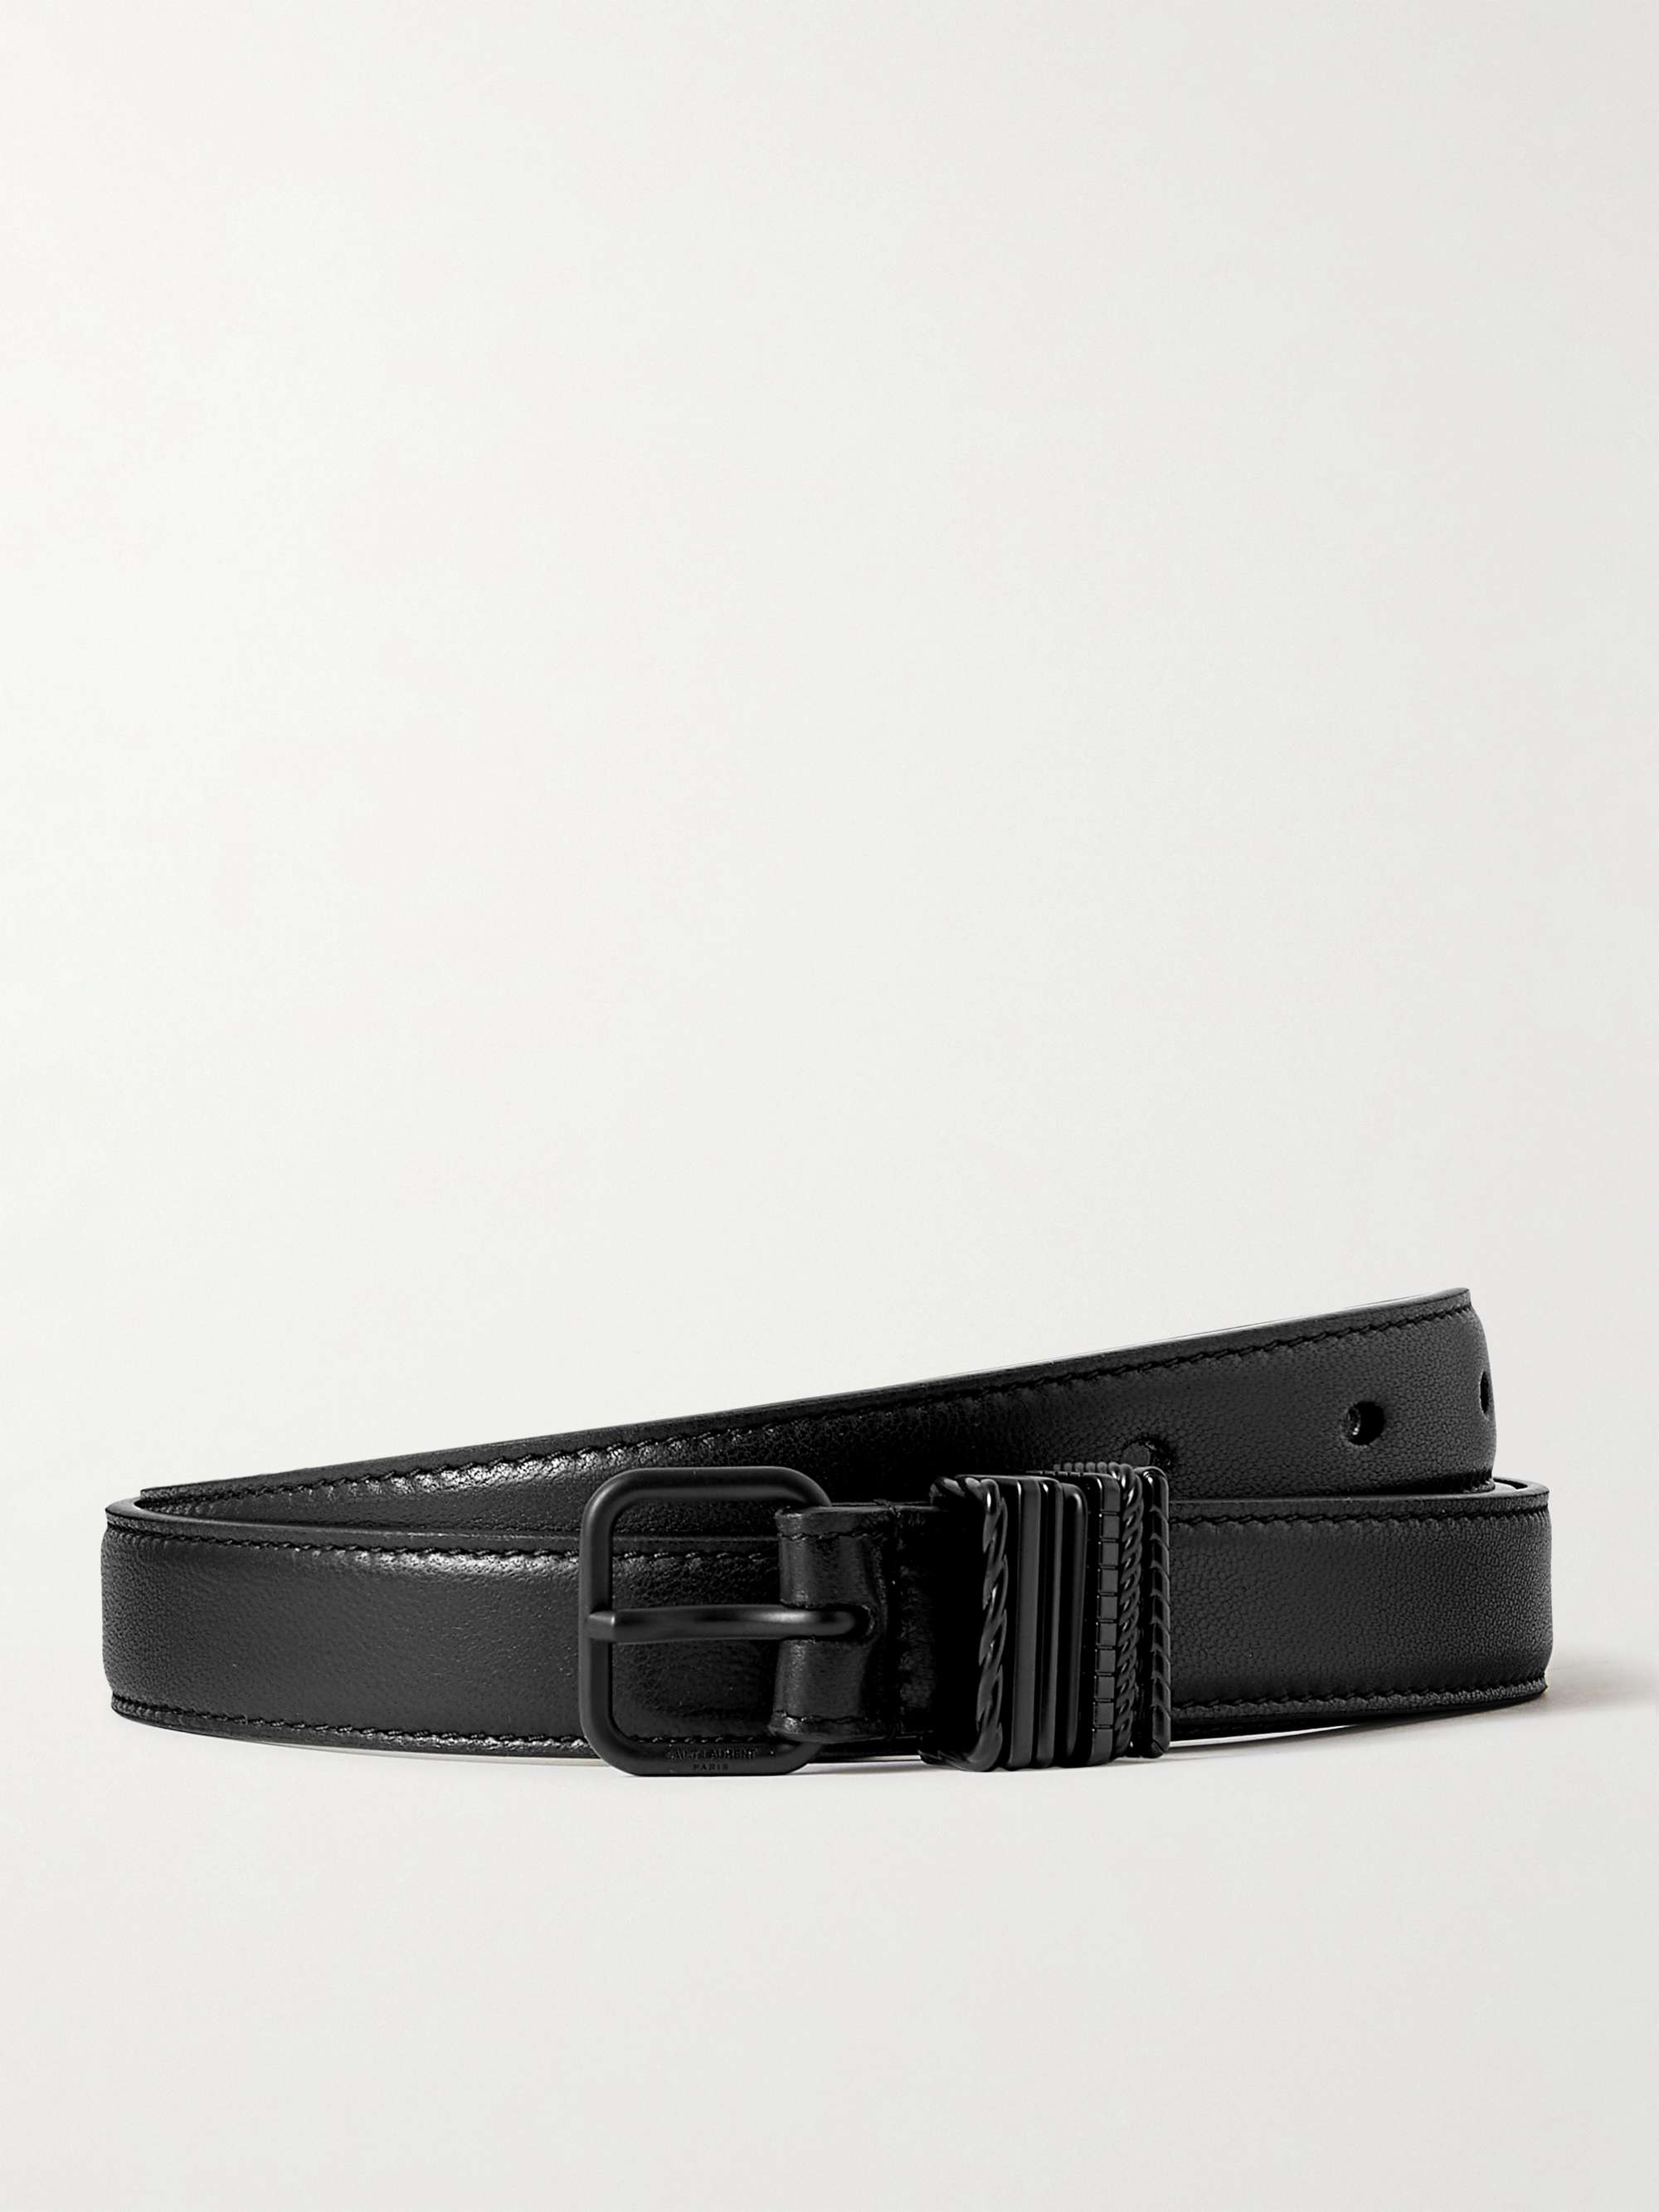 Saint Laurent Slim Grained Leather Belt - Black - Belts